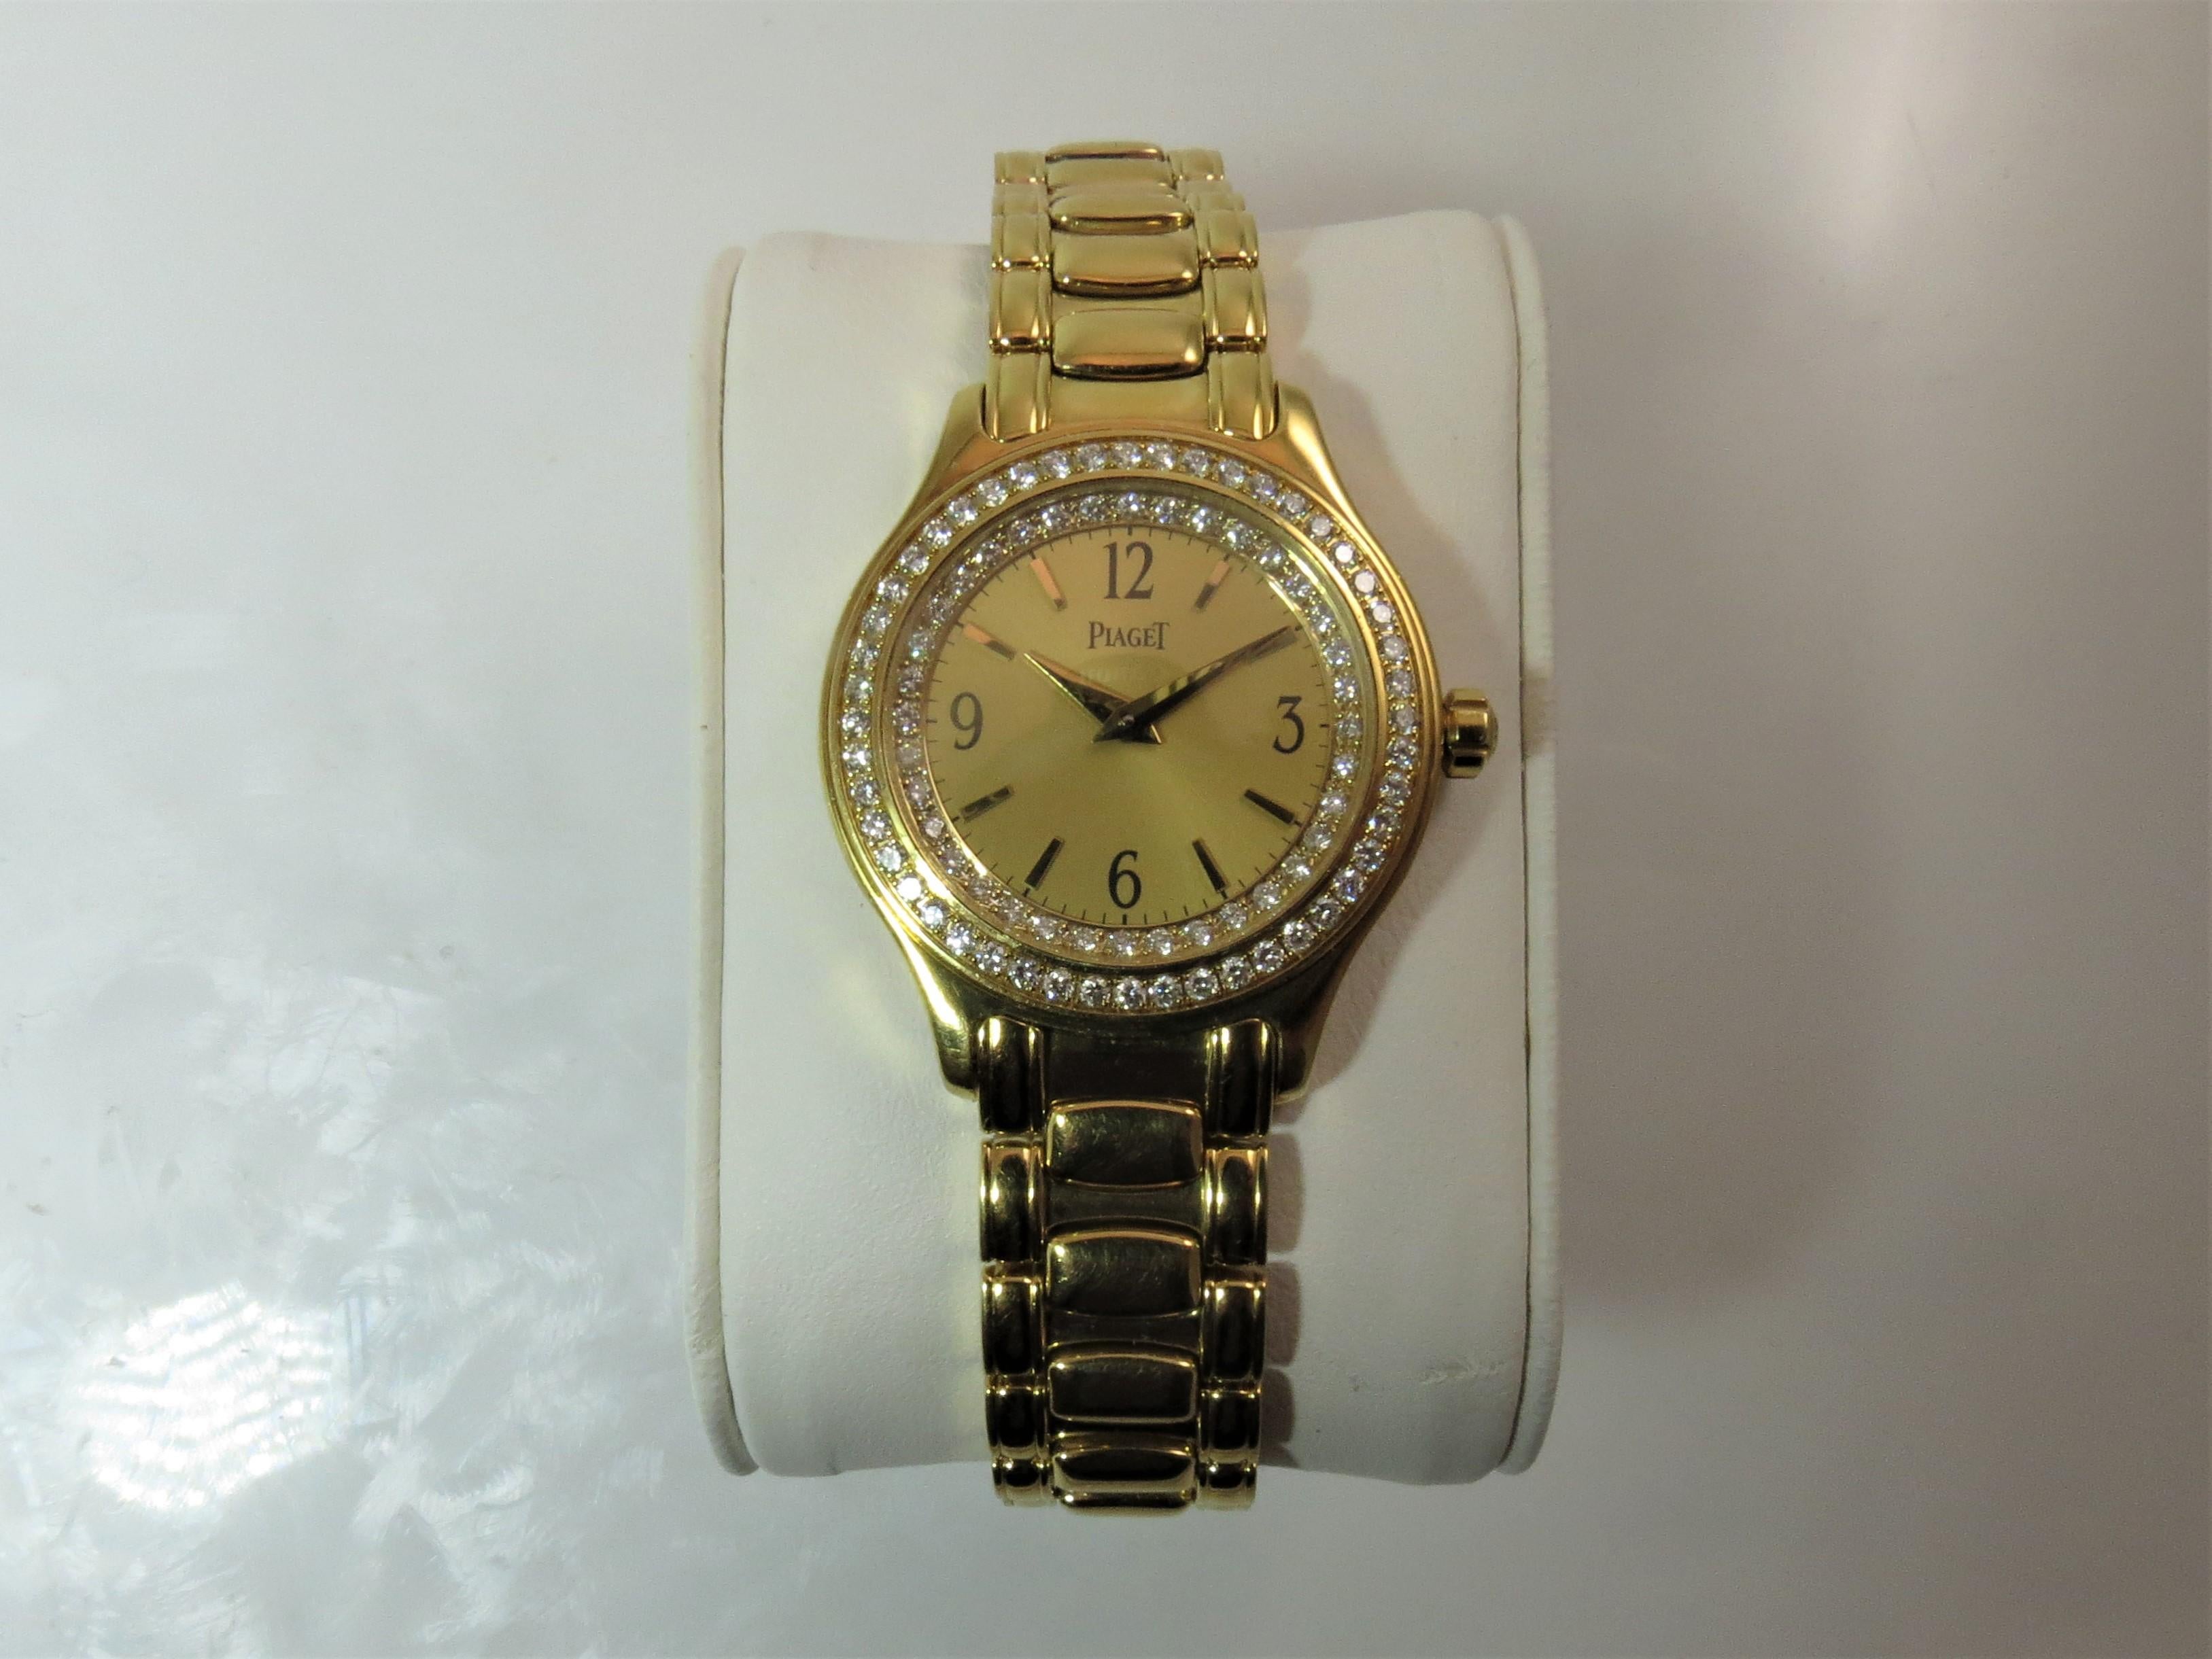 Montre bracelet Piaget en or jaune 18 carats, neuve, jamais portée, avec lunette à double rangée de diamants, mouvement à quartz, cadran doré, taille du boîtier 27 mm, style 01G0A21166, numéro de série 64666, fond du boîtier 5805M201, longueur 7,5